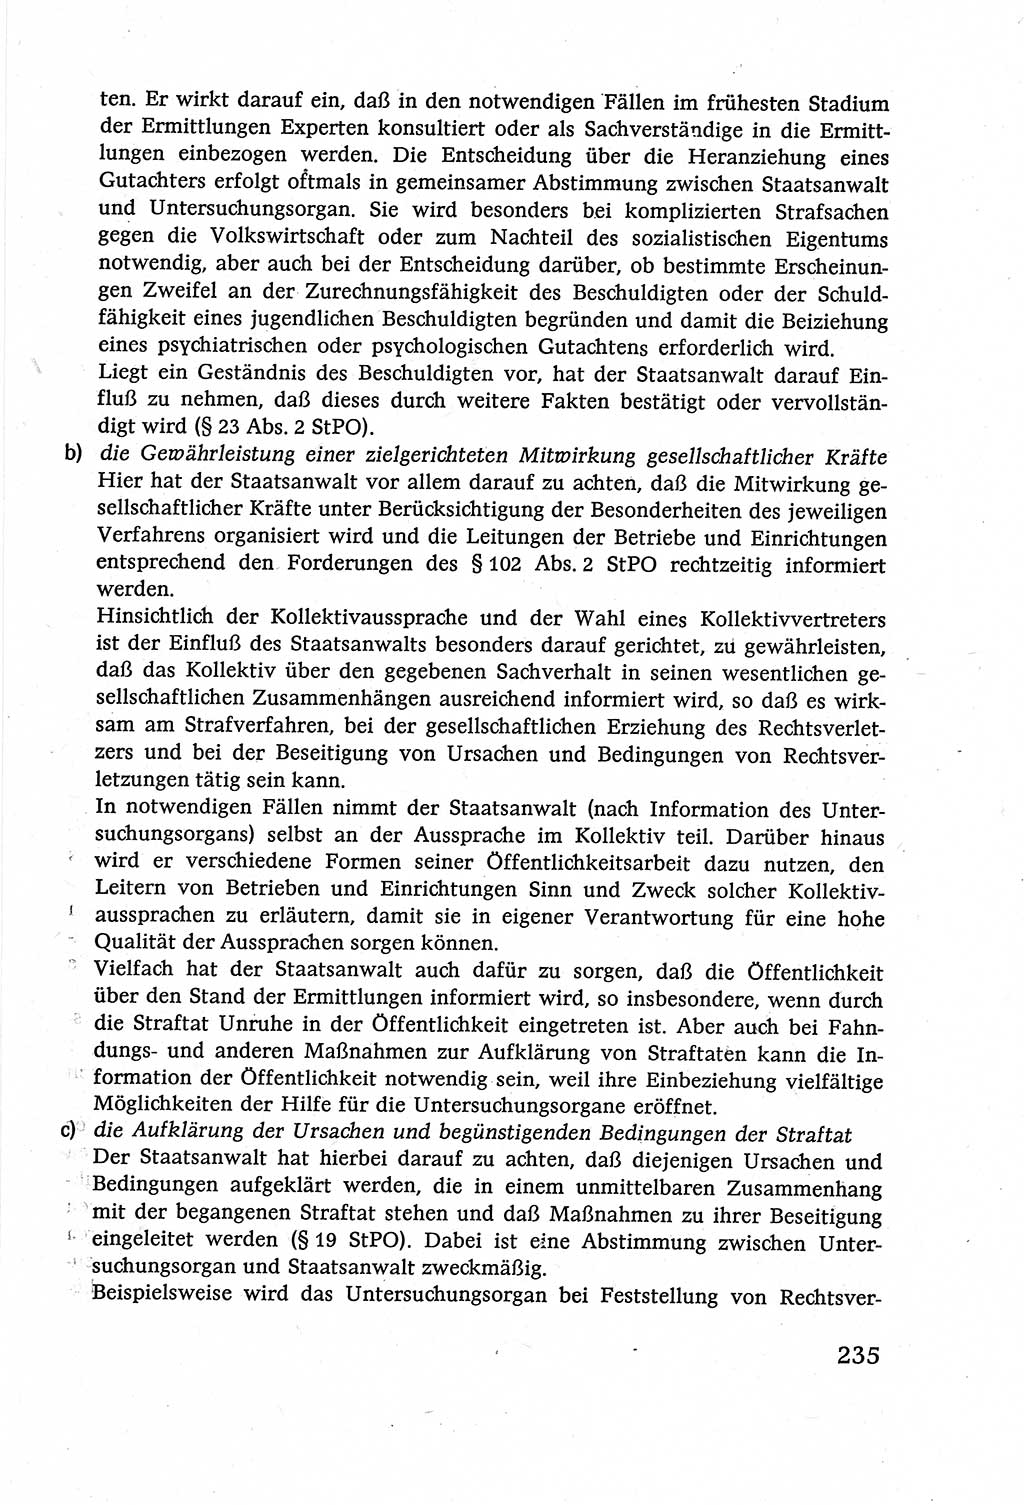 Strafverfahrensrecht [Deutsche Demokratische Republik (DDR)], Lehrbuch 1977, Seite 235 (Strafverf.-R. DDR Lb. 1977, S. 235)